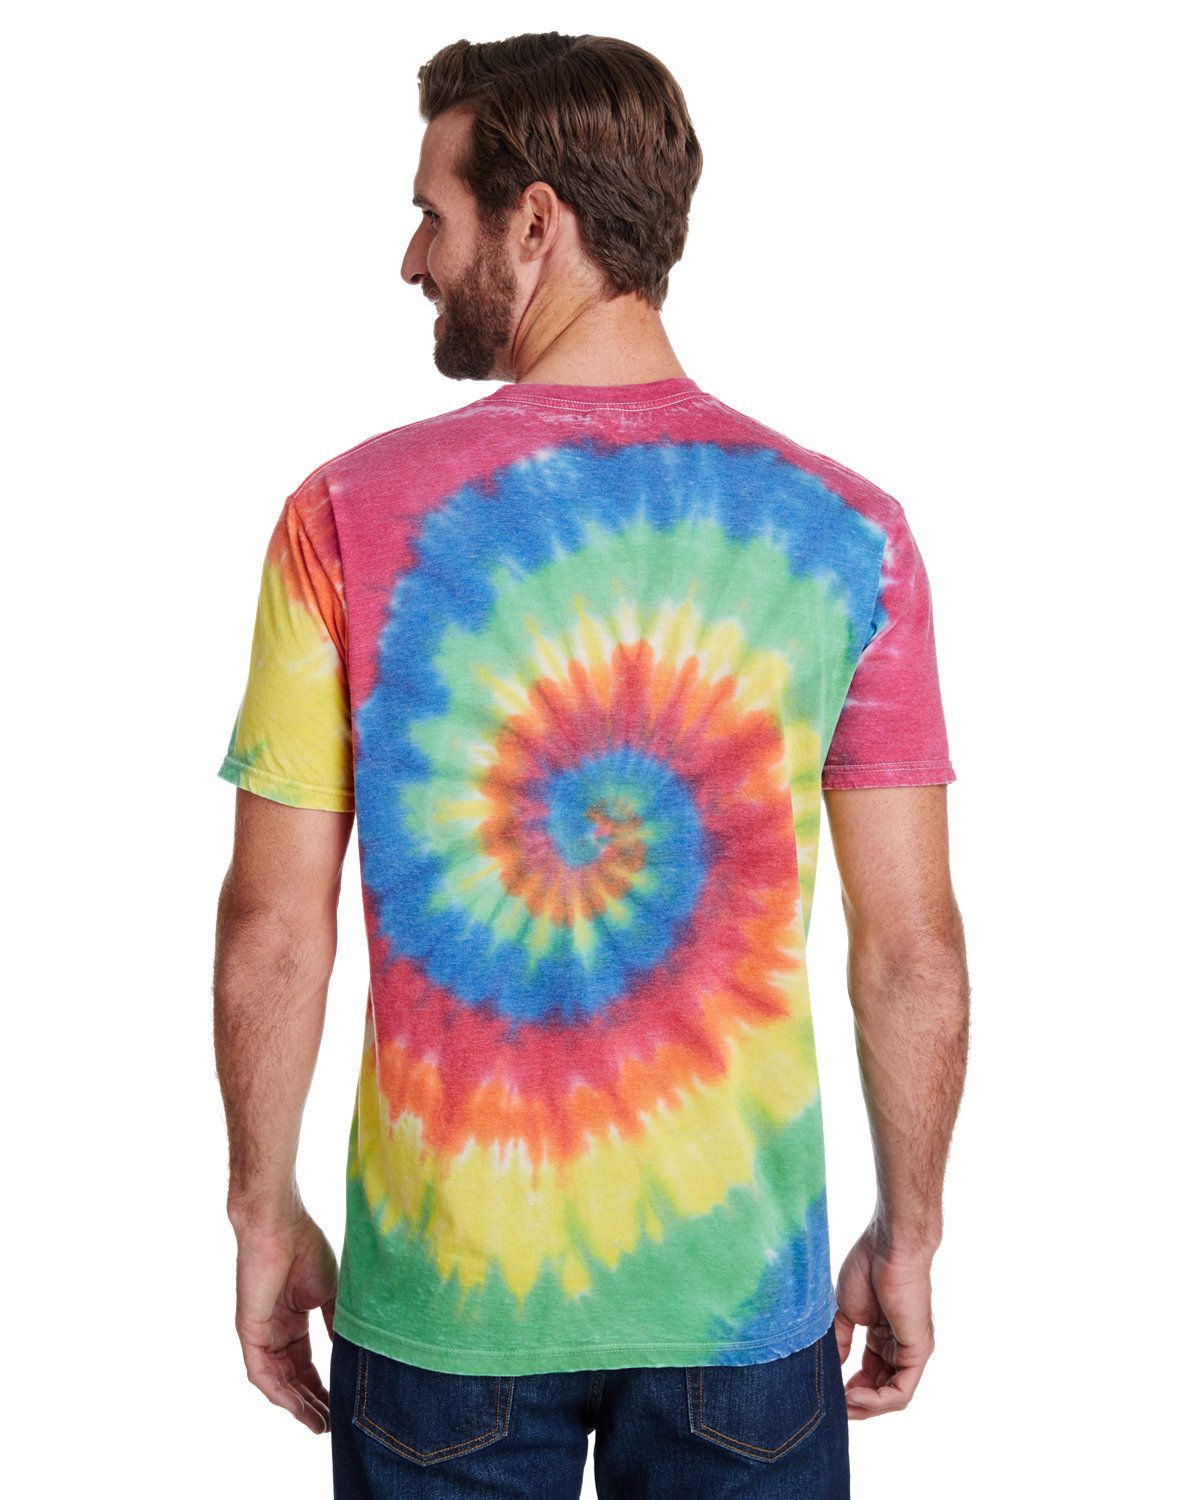 'Tie-Dye CD1090 Adult Burnout Festival T-Shirt '